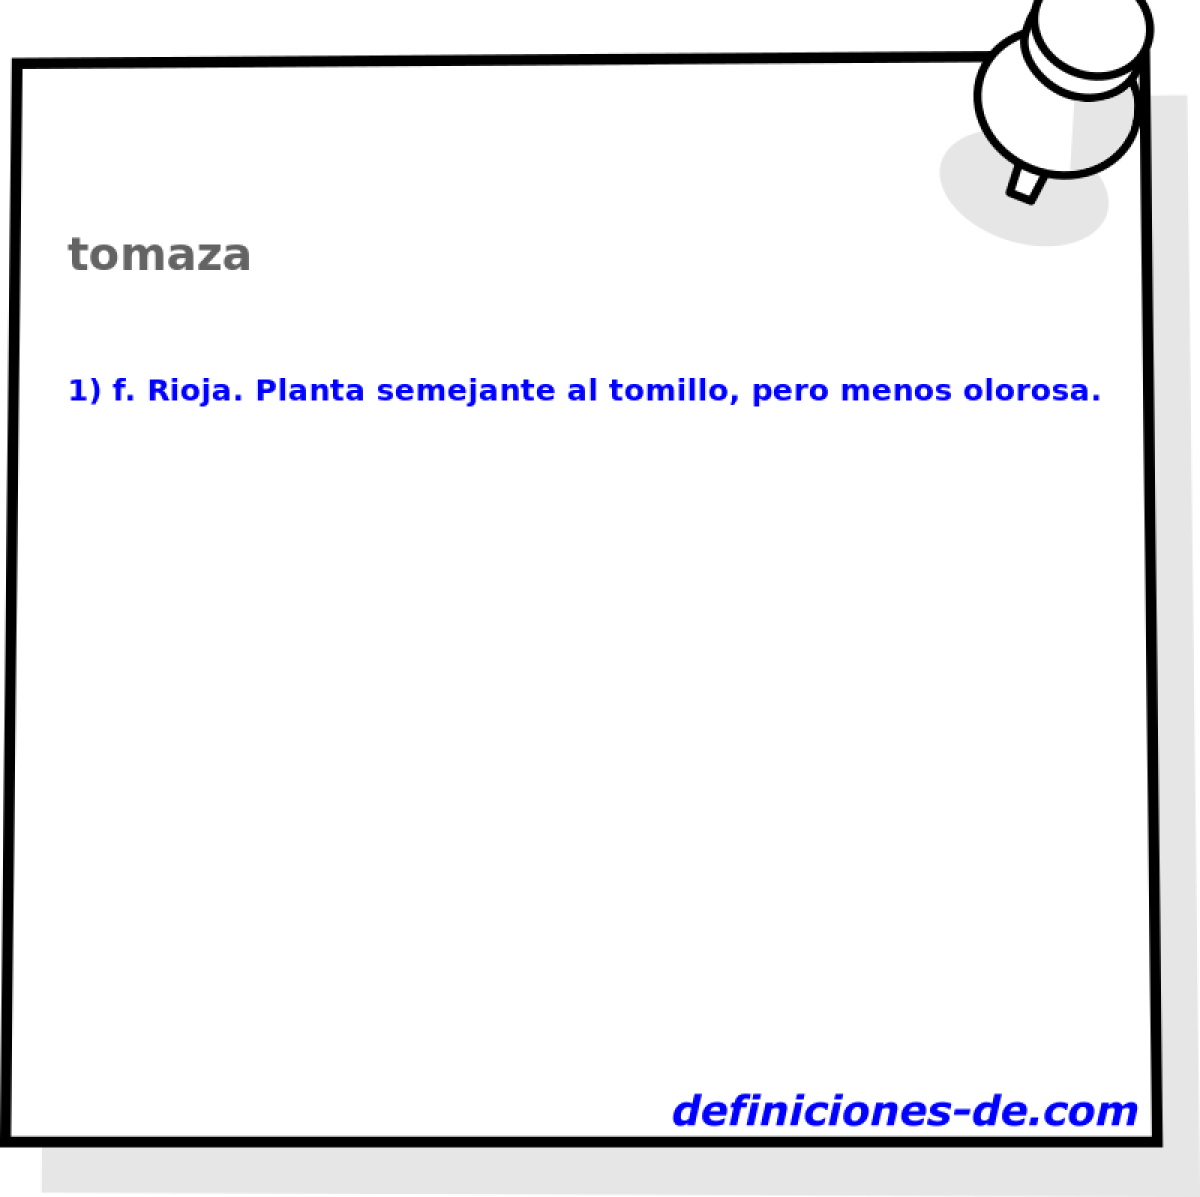 tomaza 